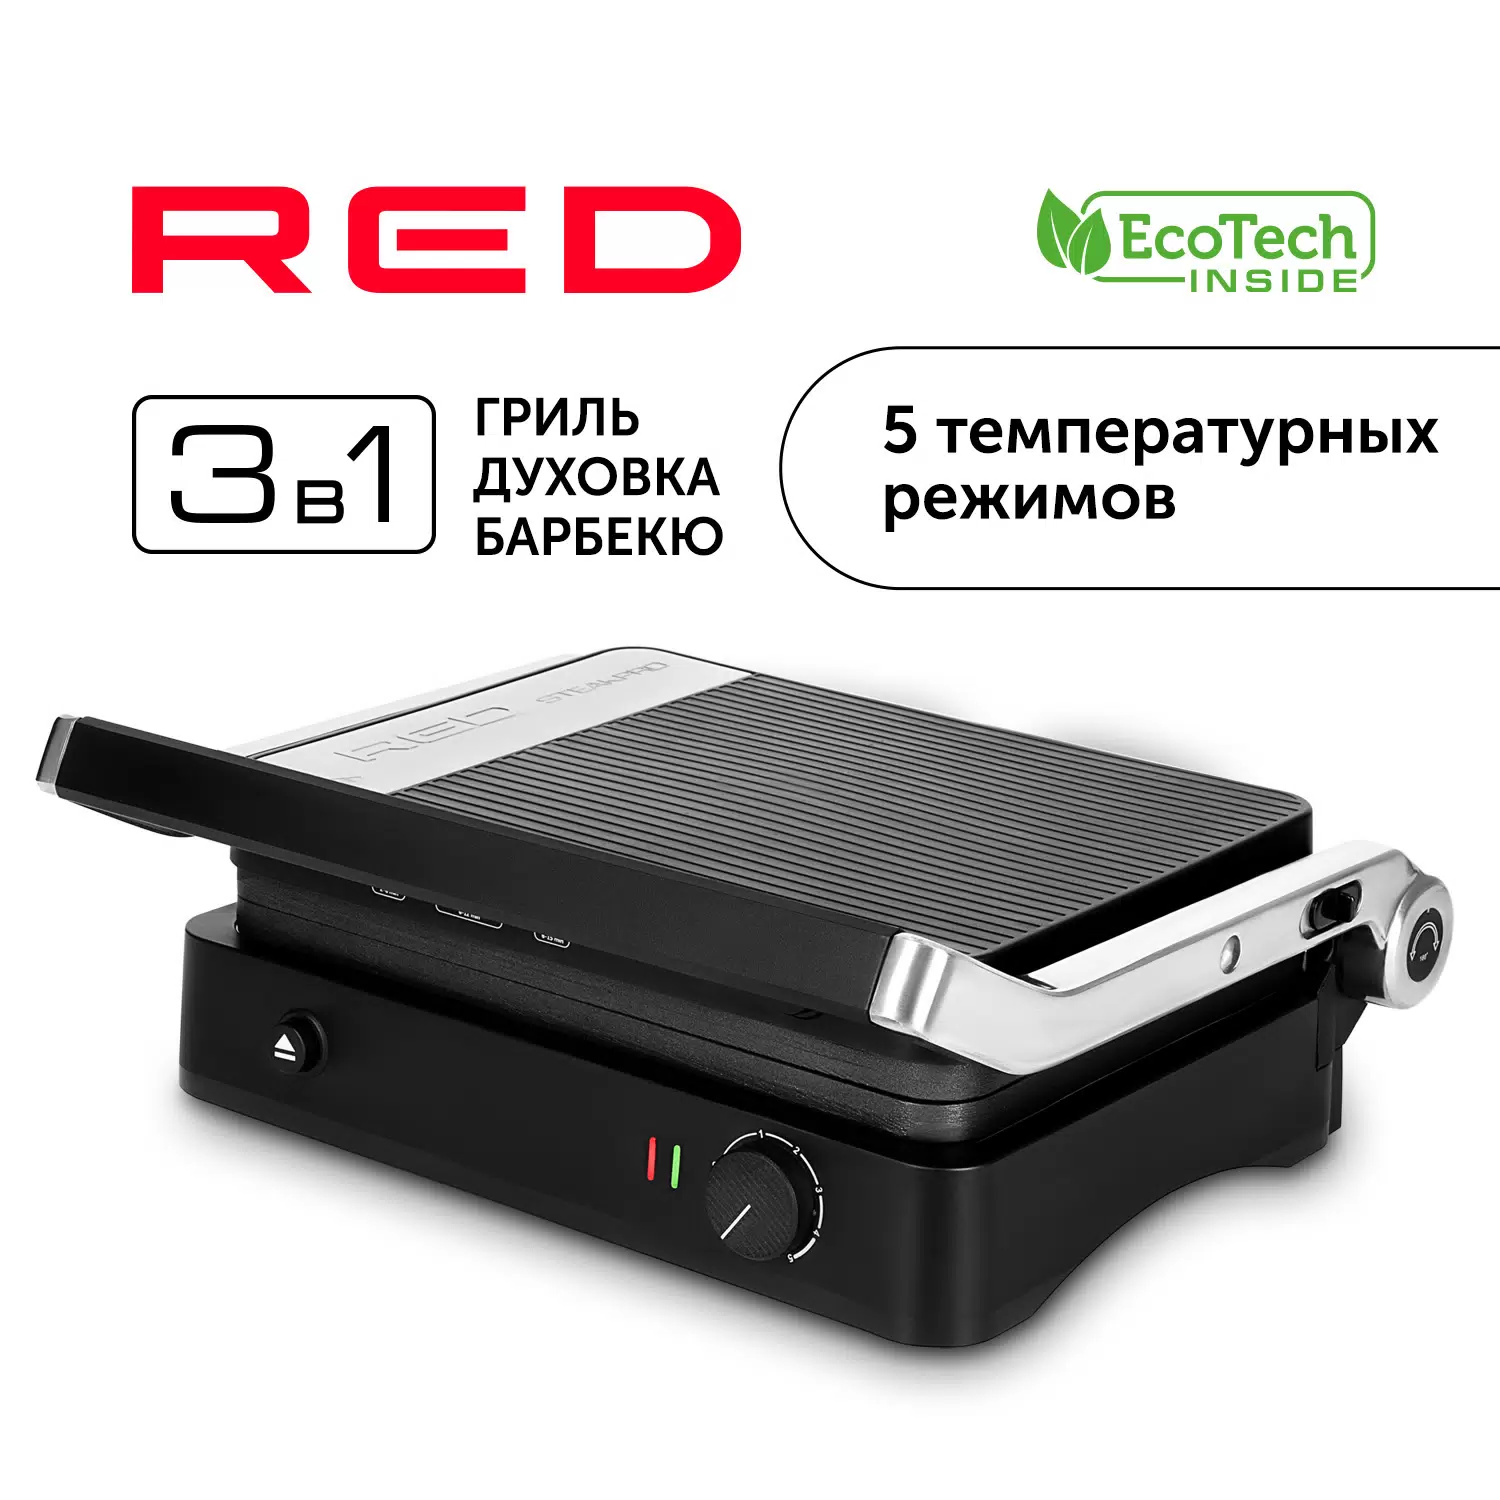 Гриль RED SOLUTION RGM-M804 черный - VLARNIKA в Луганске